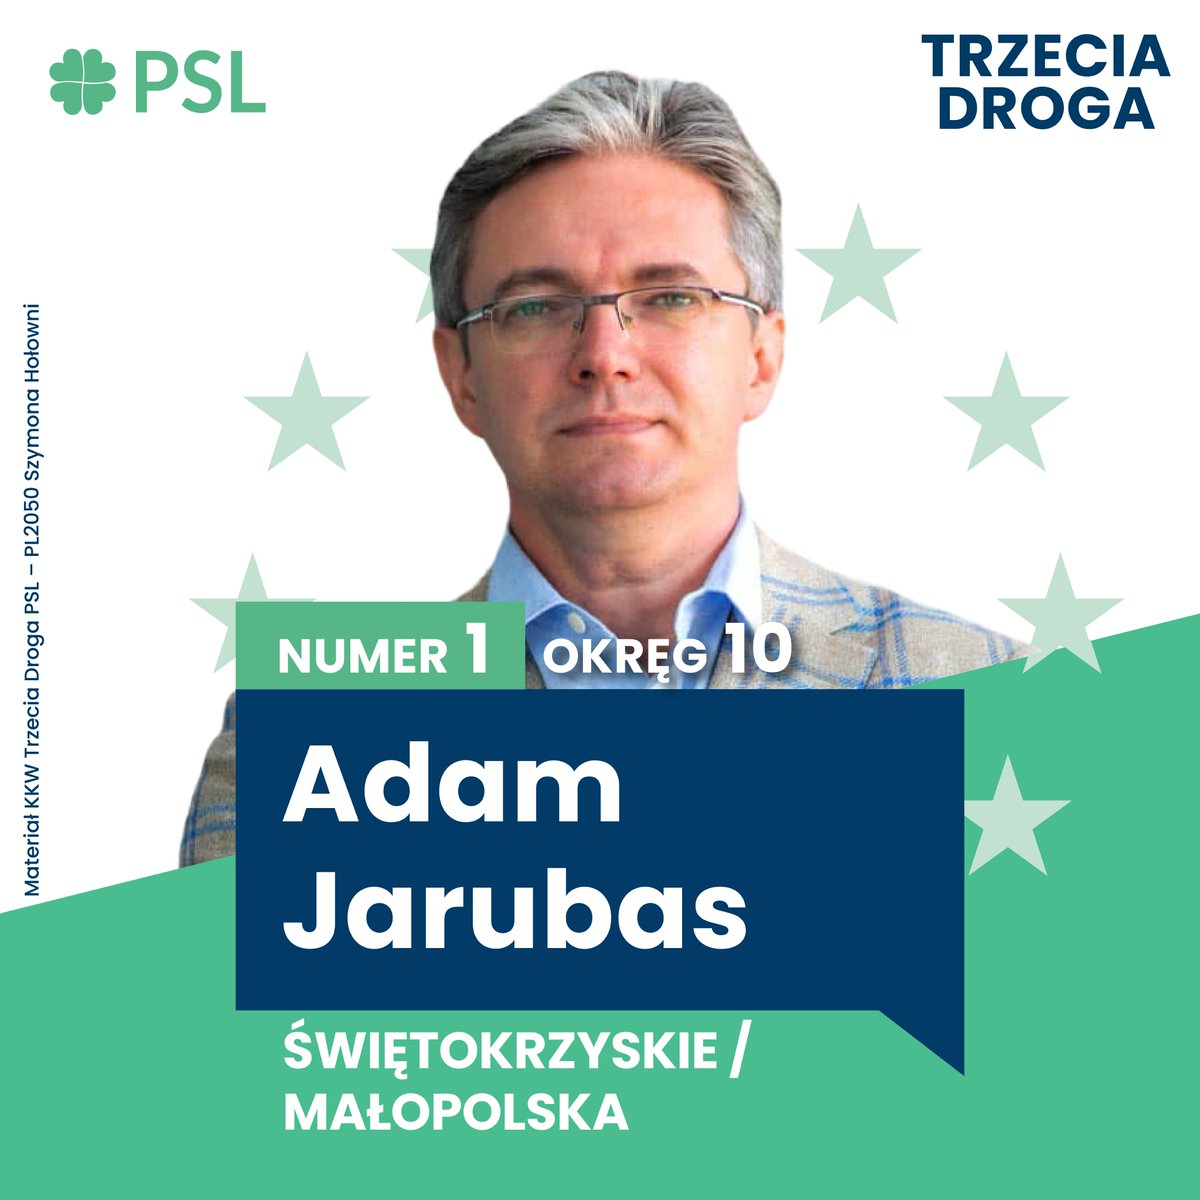 🇵🇱 Liderzy #TrzeciaDroga @nowePSL w wyborach europejskich 🇪🇺 1️⃣ @JarubasAdam 🗳️ Okręg 10 • Małopolska / Świętokrzyskie